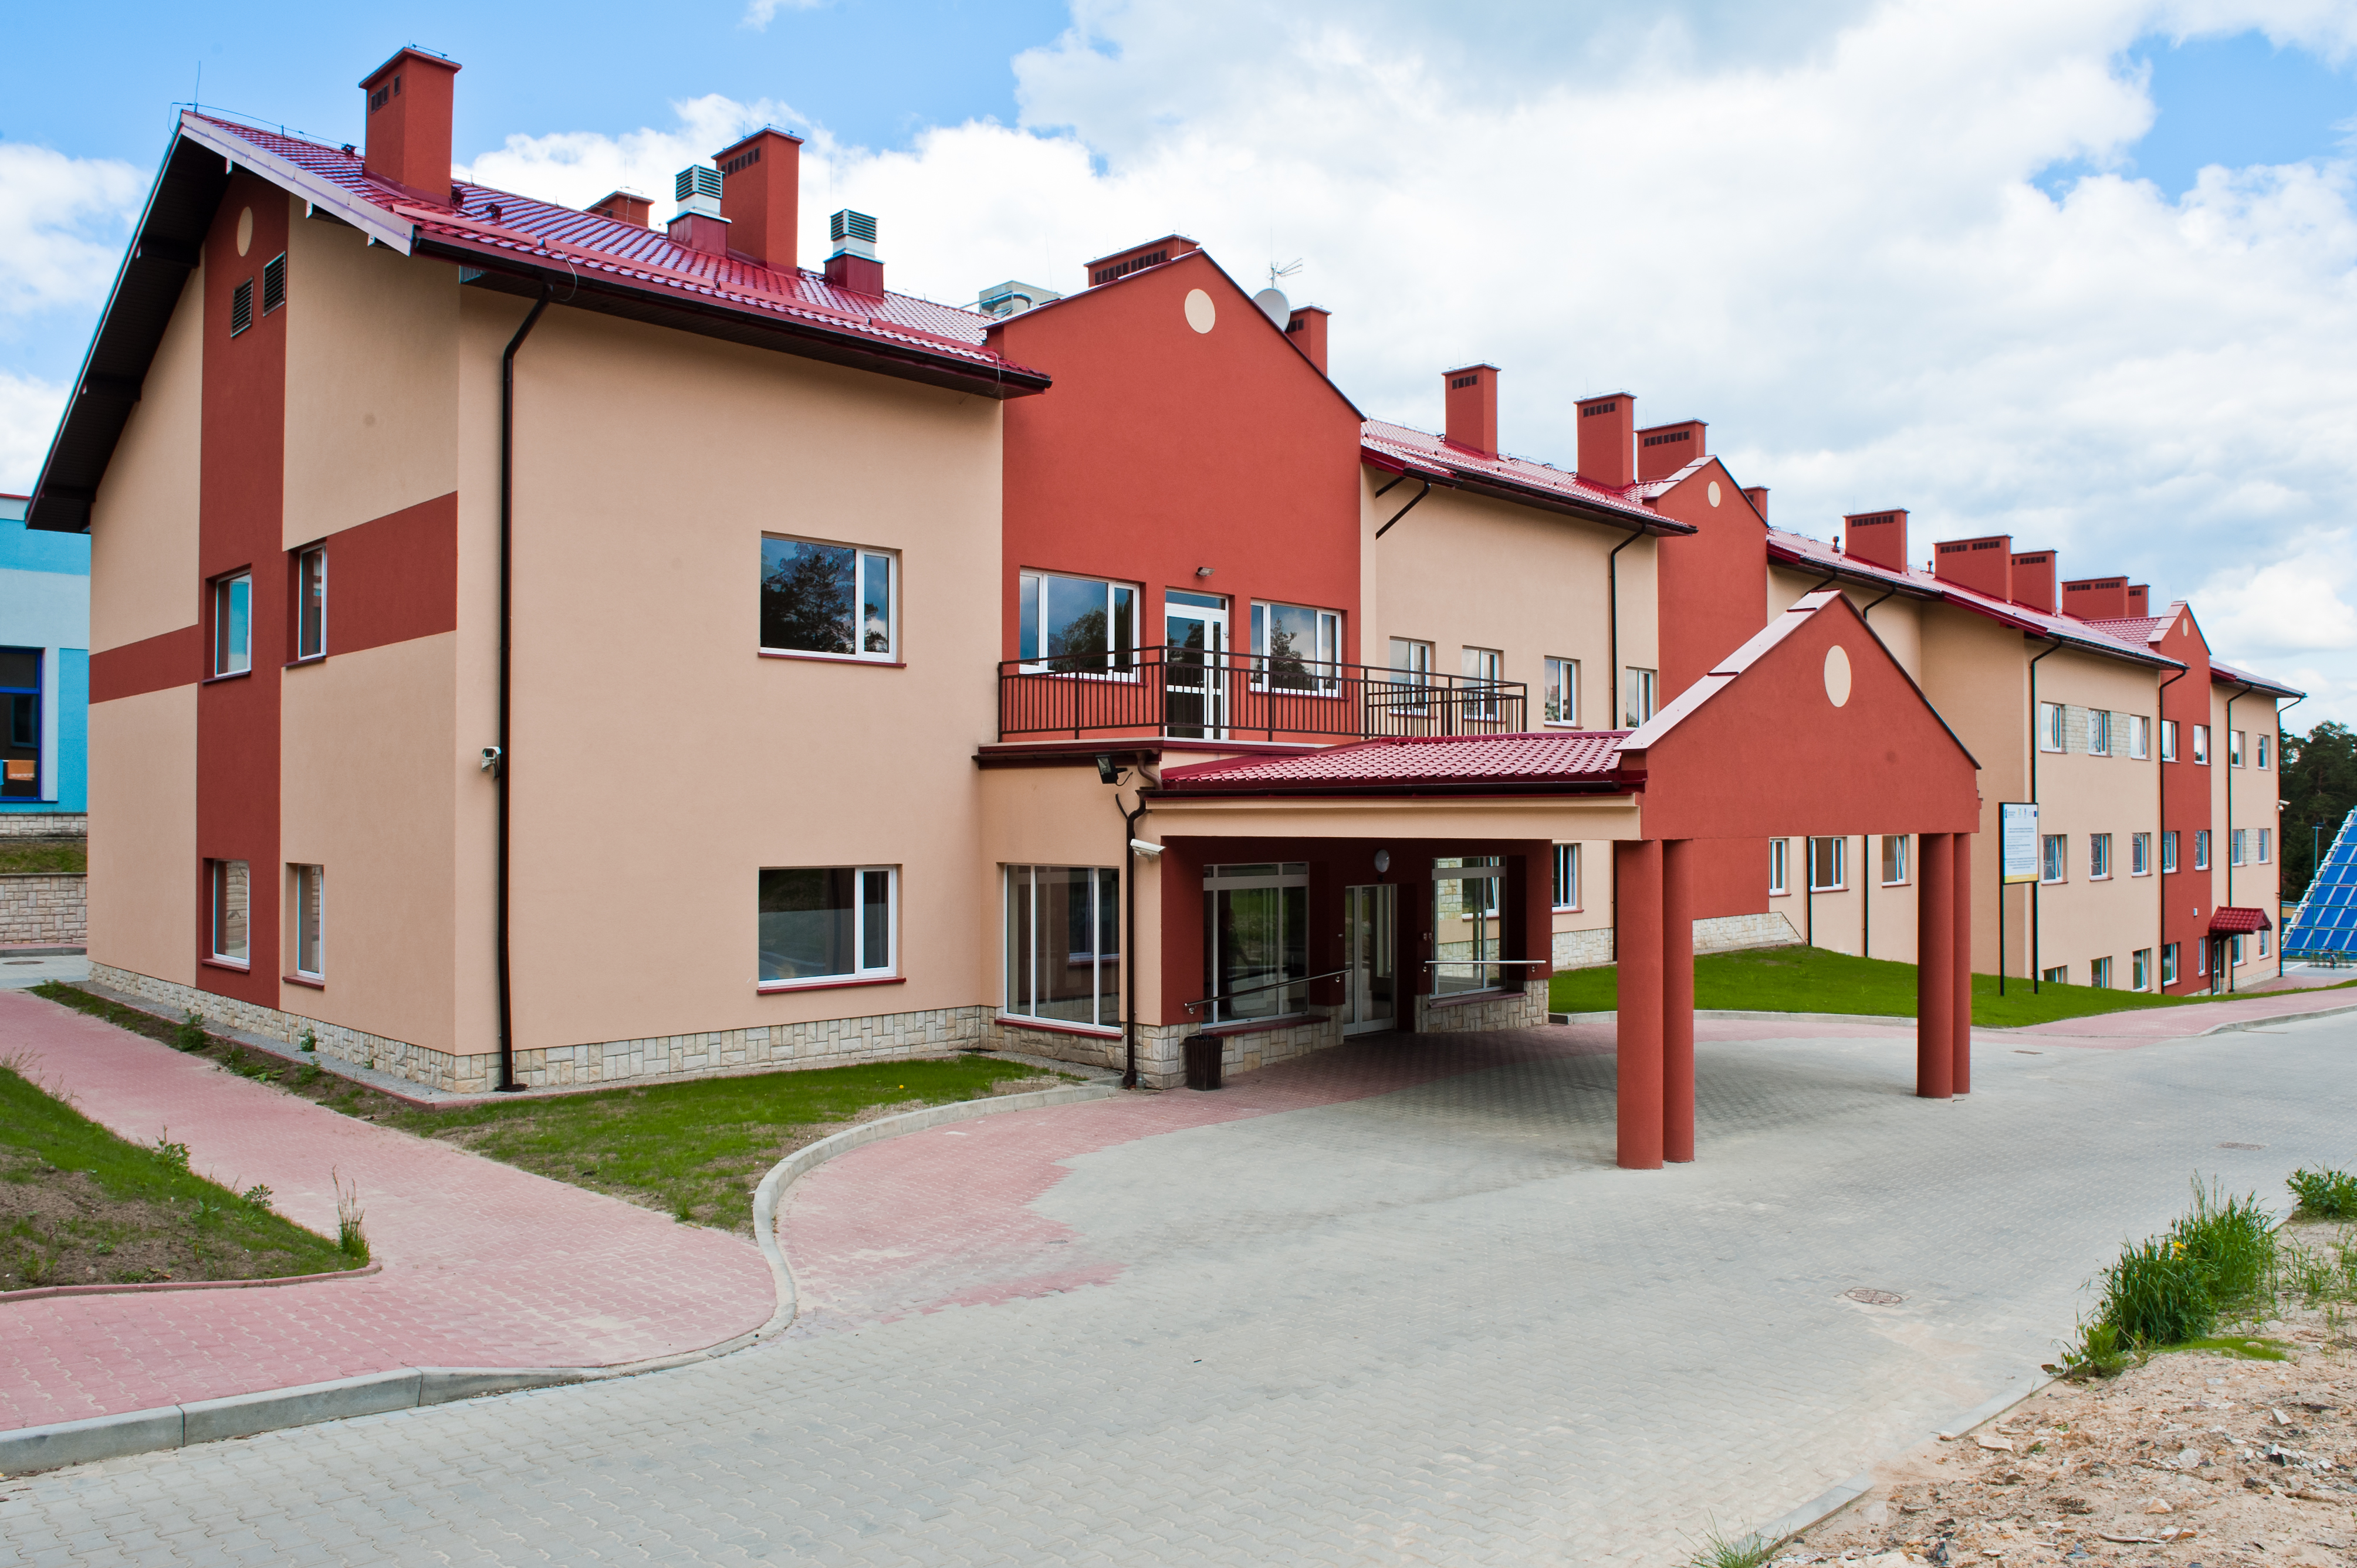 Świętokrzyskie Centrum Rehabilitacji w Czarnieckiej Górze